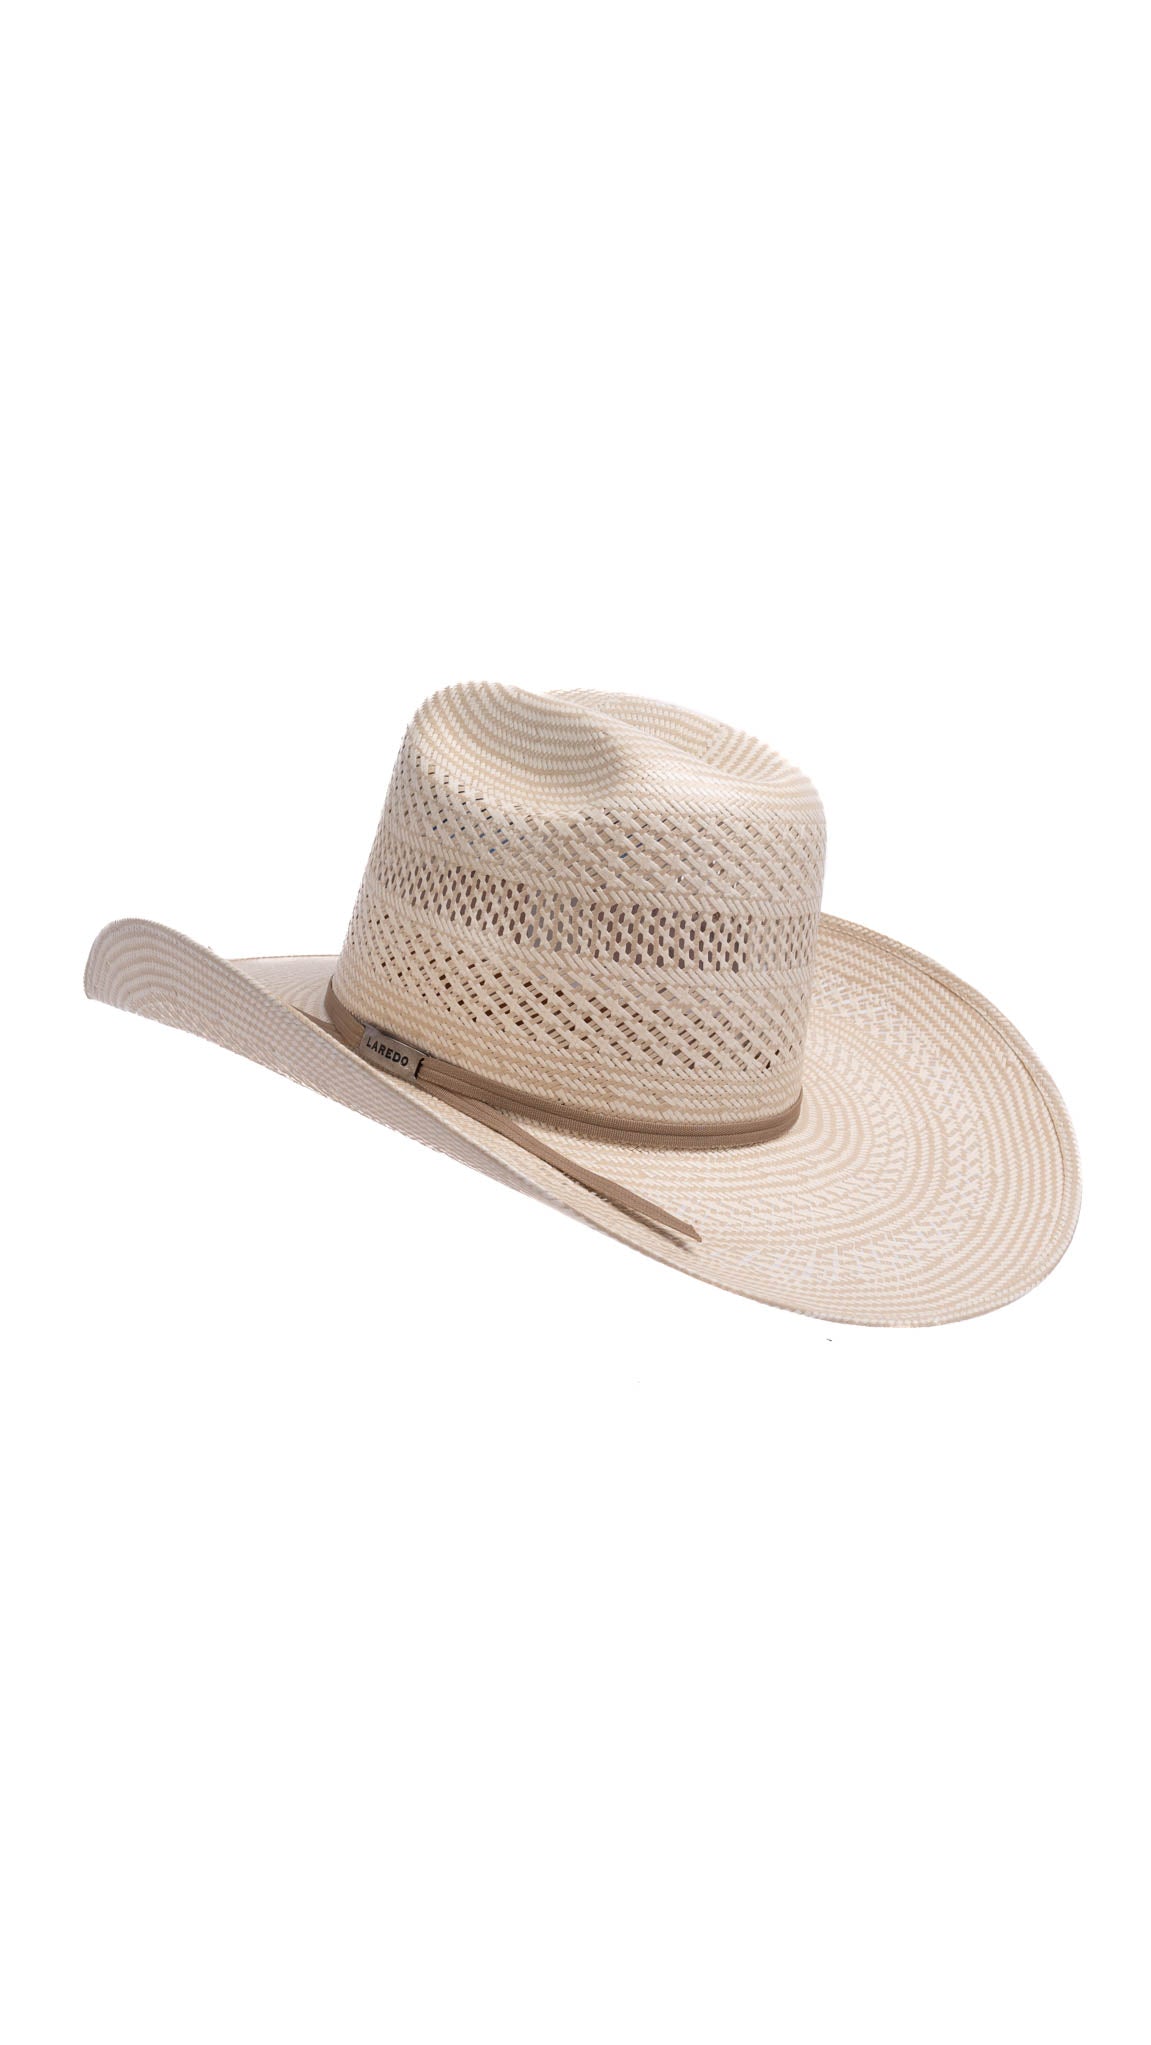 Cardenas Laredo Minnick 200X Straw Hat